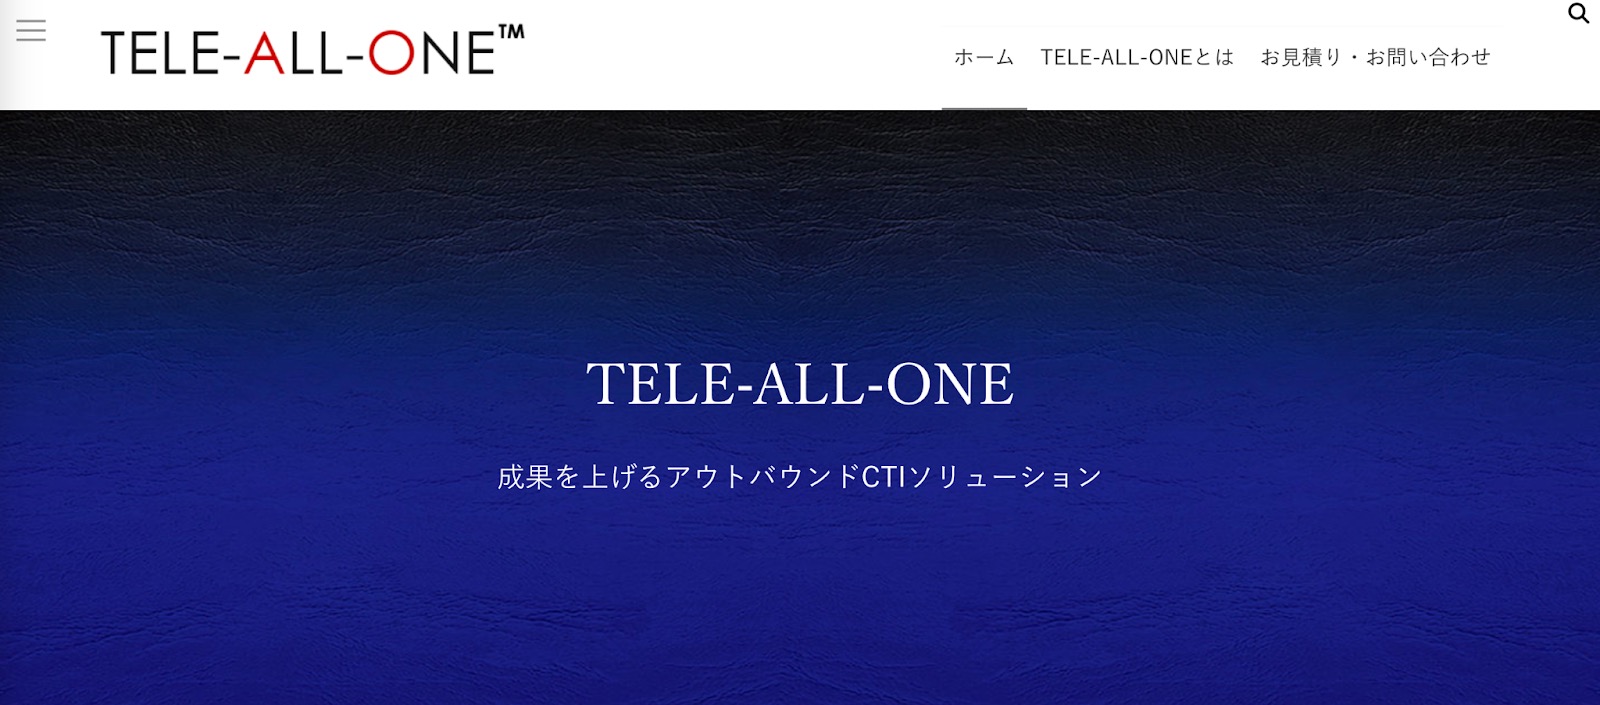 tele-all-one